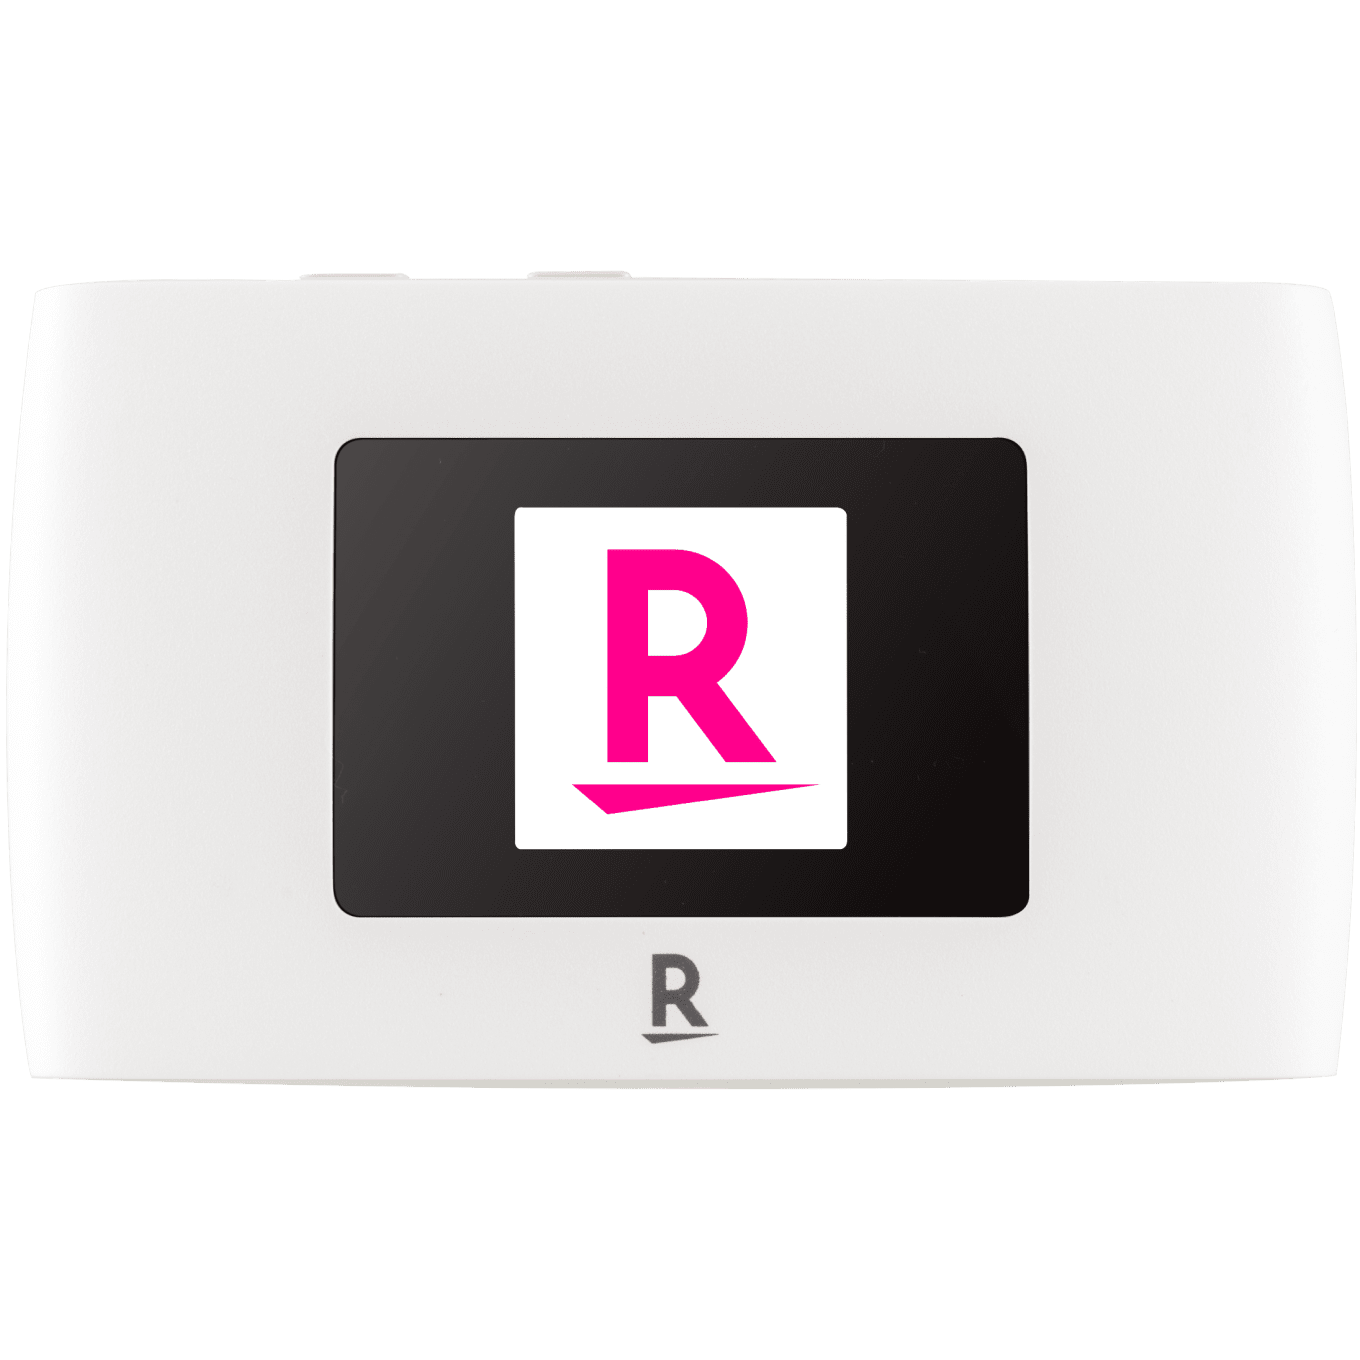 Rakuten（ラクテン） WiFi Pocket 2Cモバイルルーター